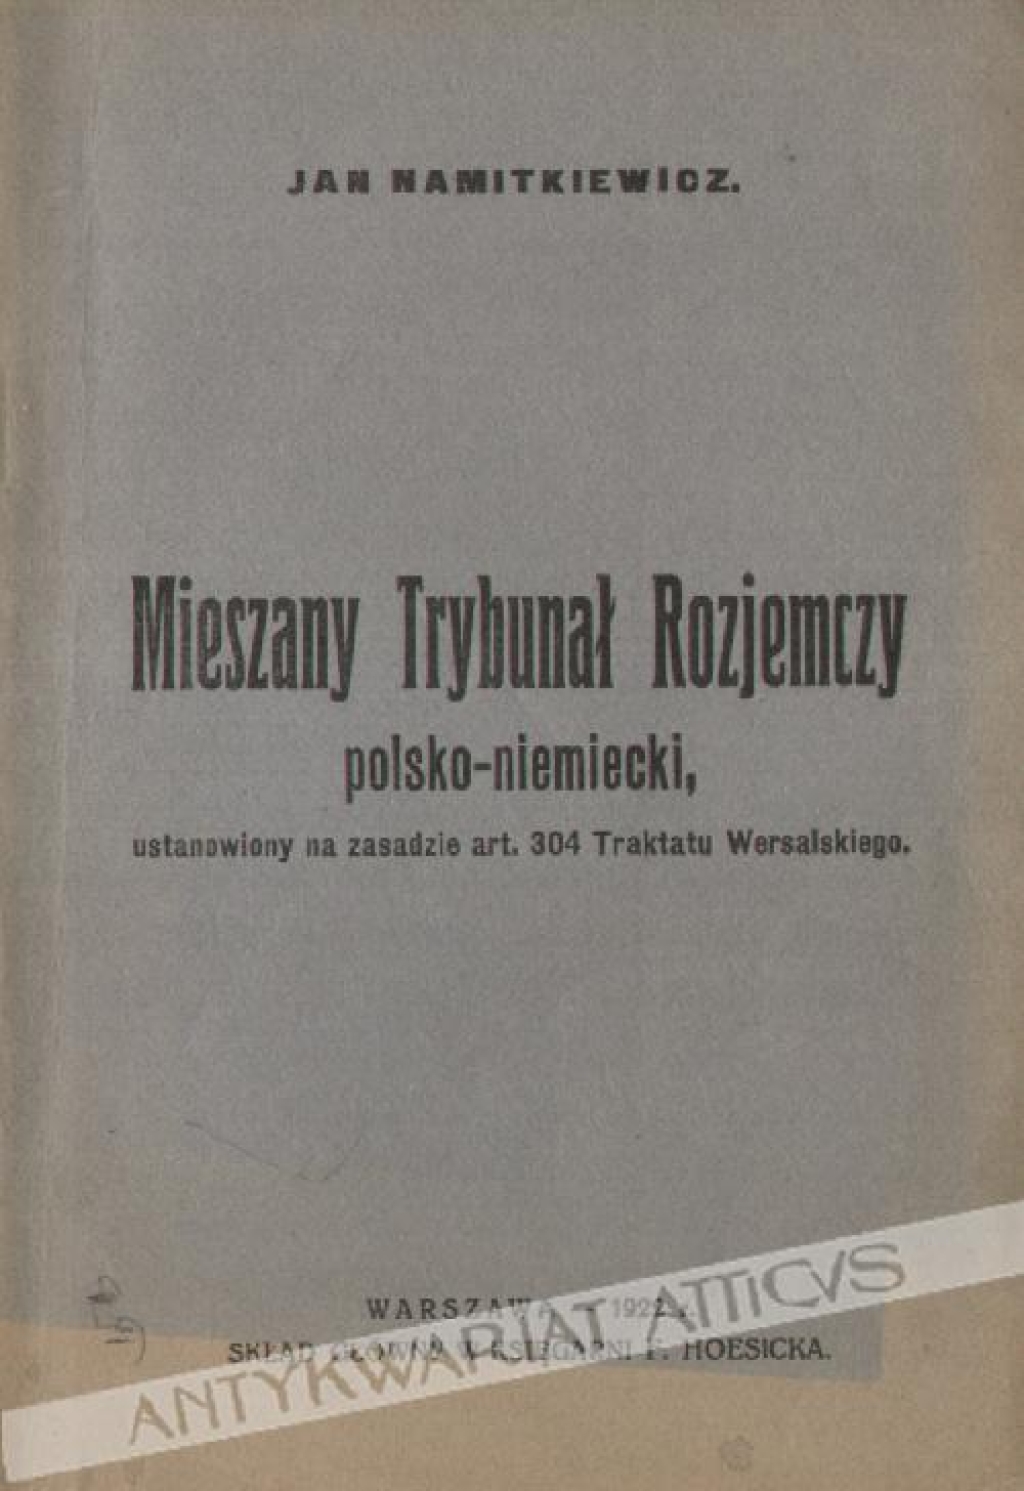 Mieszany Trybunał Rozjemczy polsko-niemiecki, ustanowiony na zasadzie art. 304 Traktatu Wersalskiego  